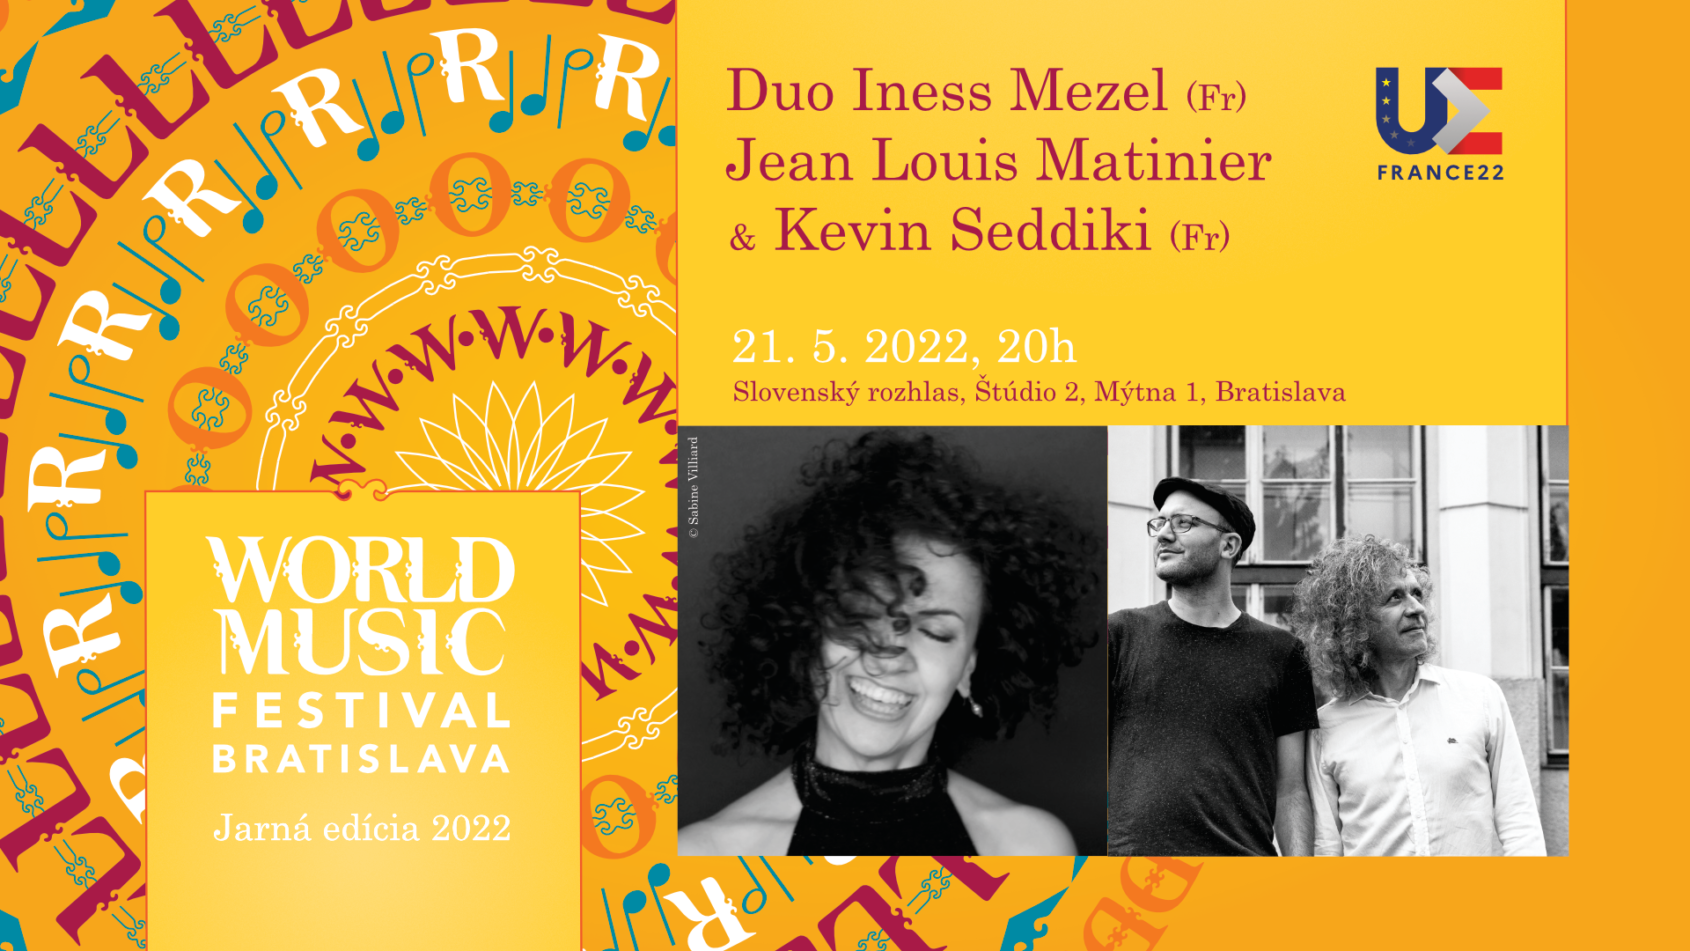 Duo Iness Mezel et Jean-Louis Matinier & Kevin Seddiki – double concert français au World Music Festival de Bratislava